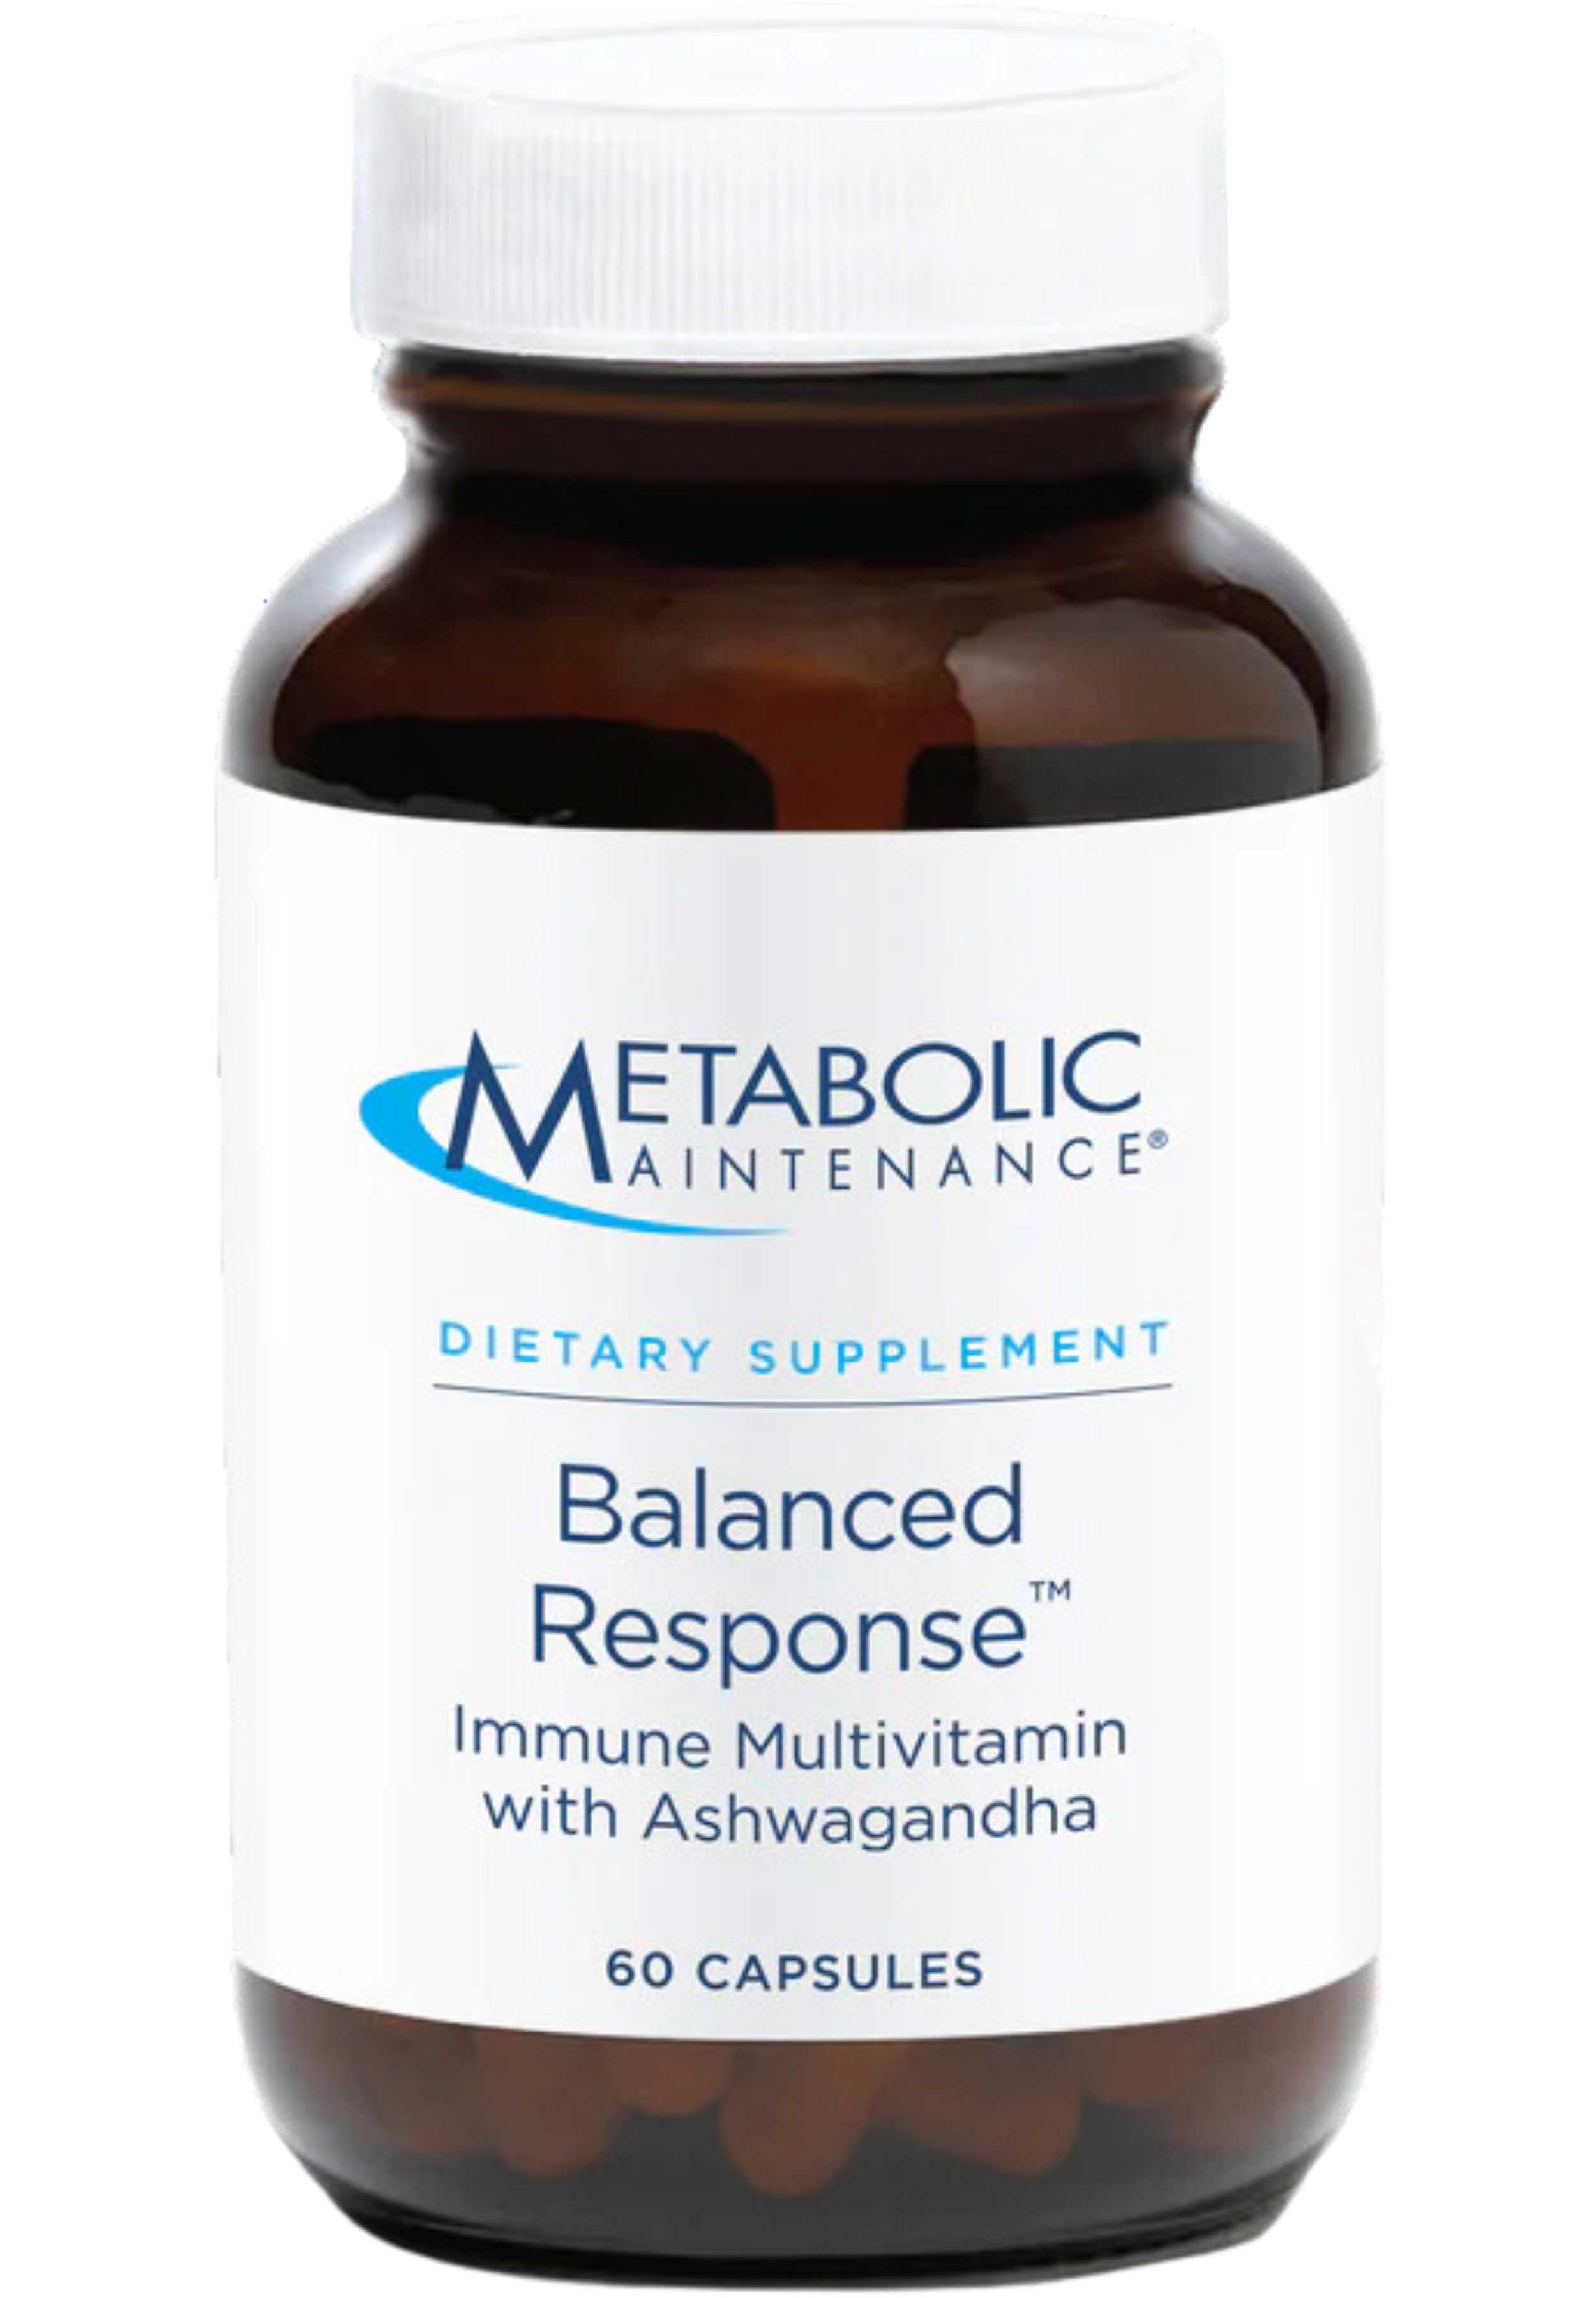 Metabolic Maintenance Balanced Response